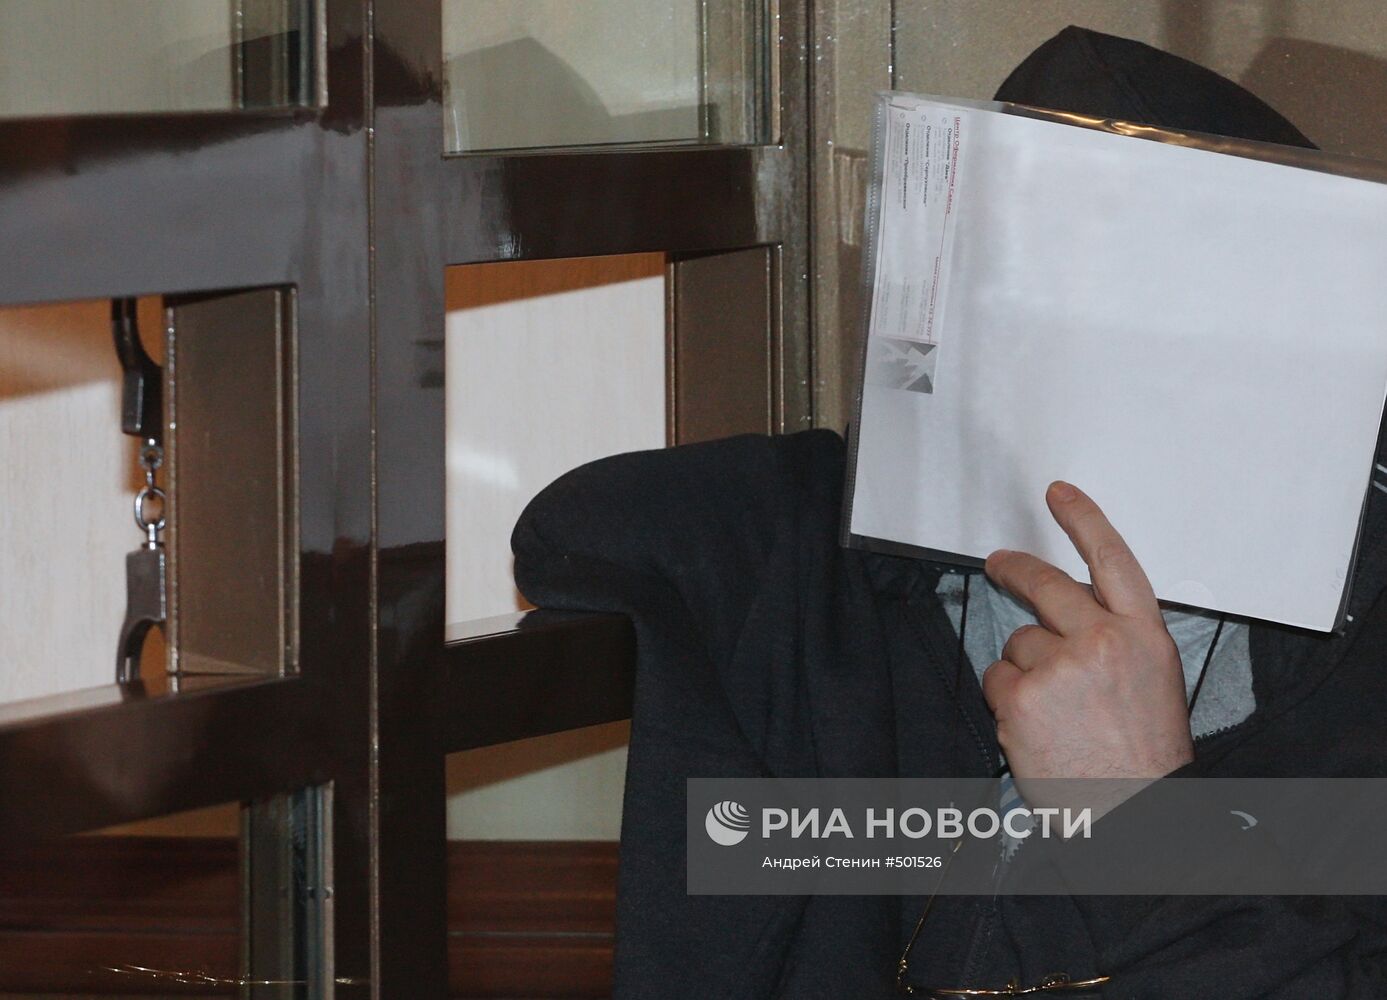 Оглашение приговора Владимиру Барсукову (Кумарину) в Мосгорсуде